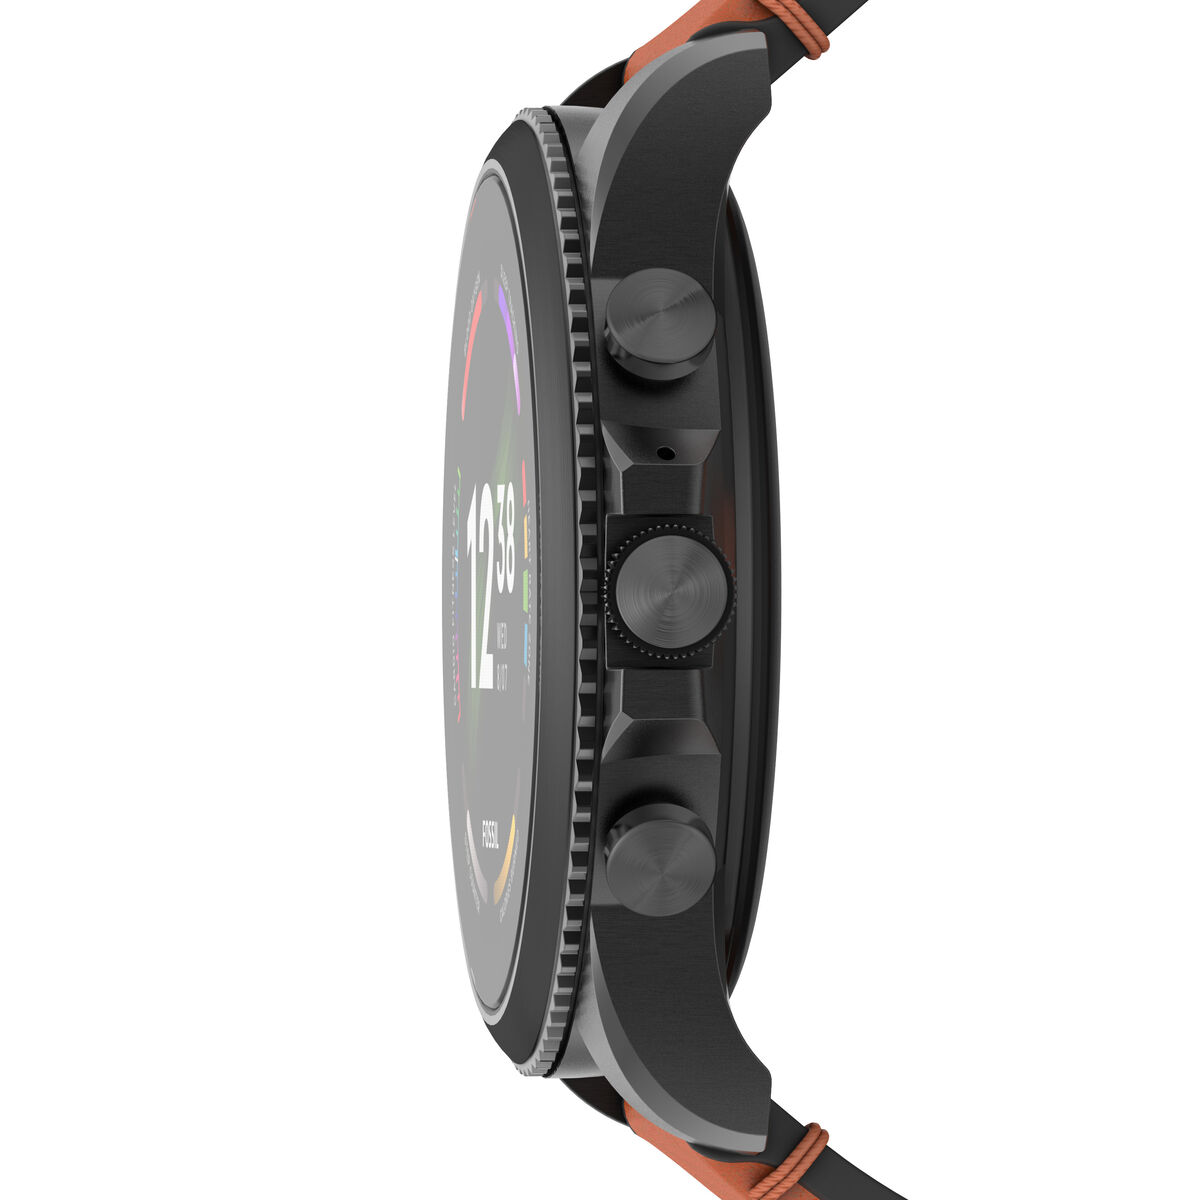 Smartwatch Fossil FTW4062 Czarny Brązowy 1,28"